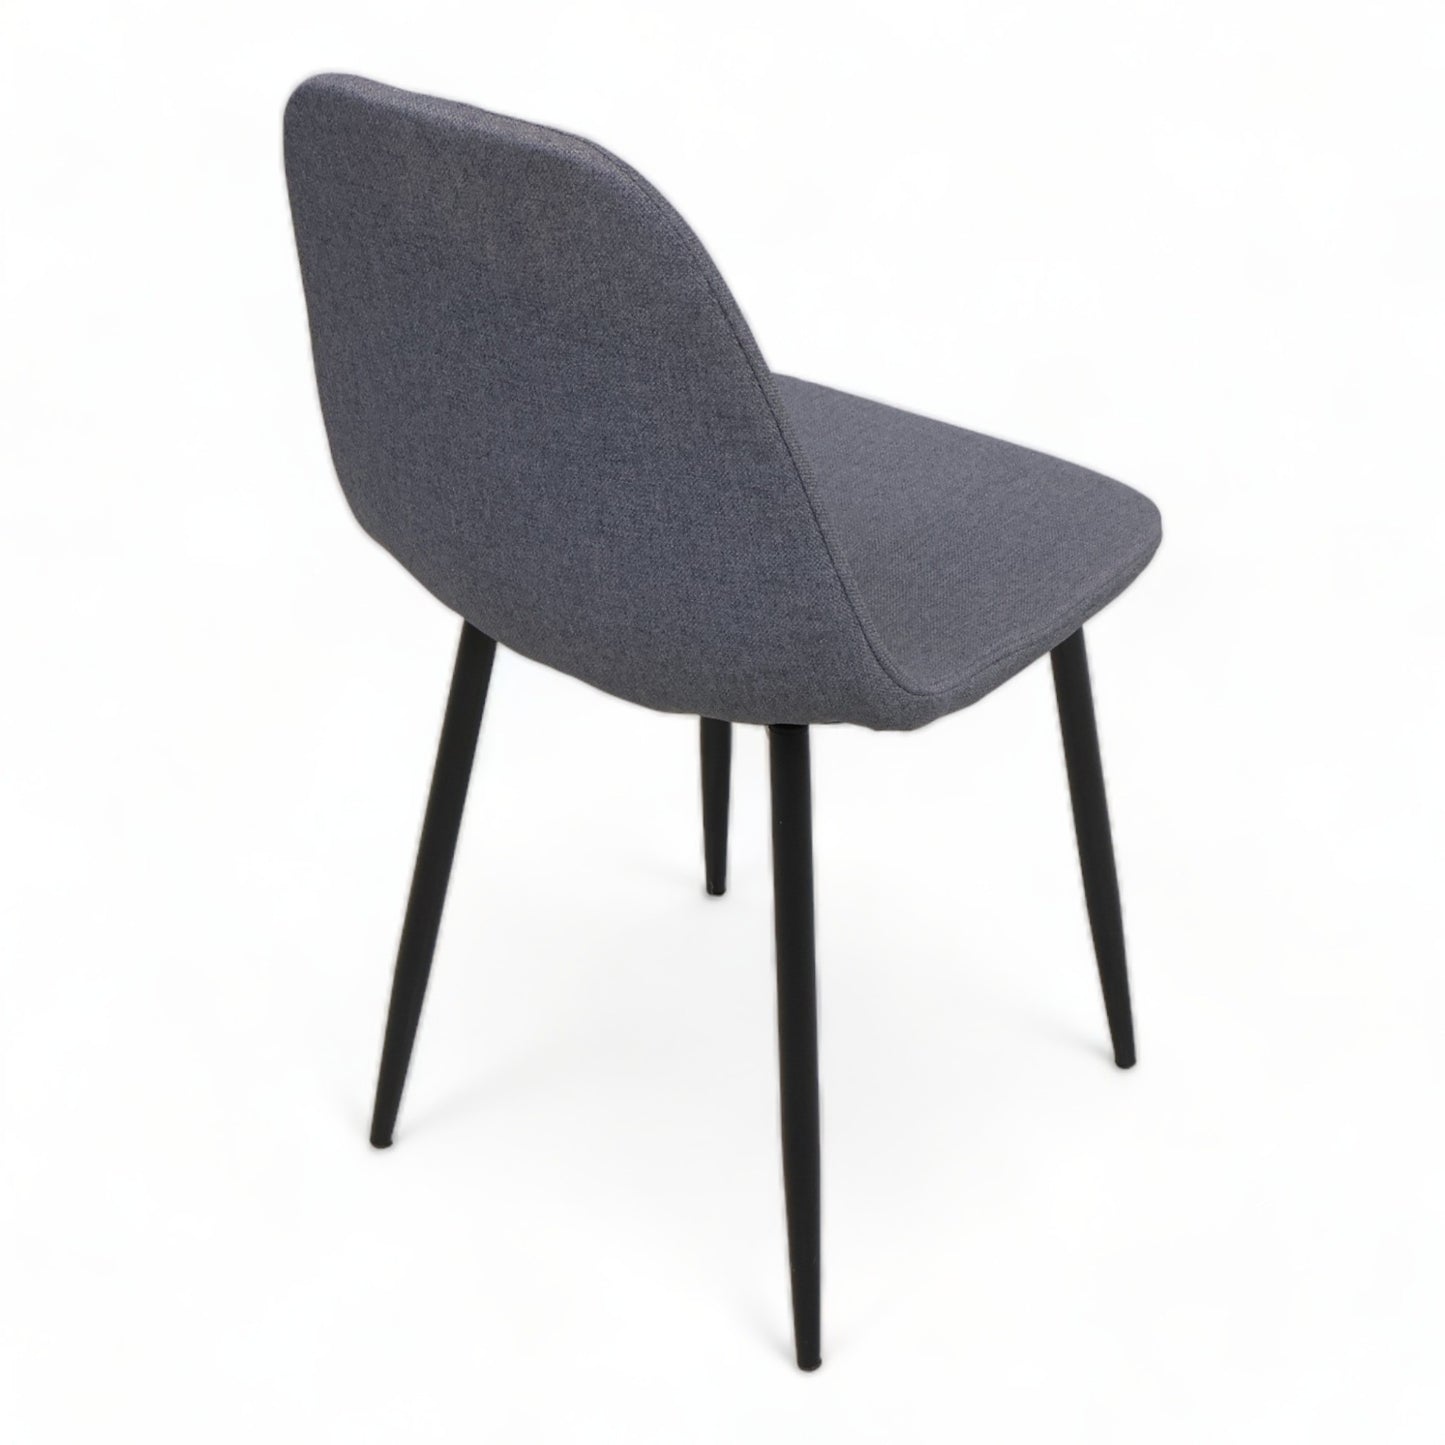 Nyrenset | Enkel stol i moderne stil